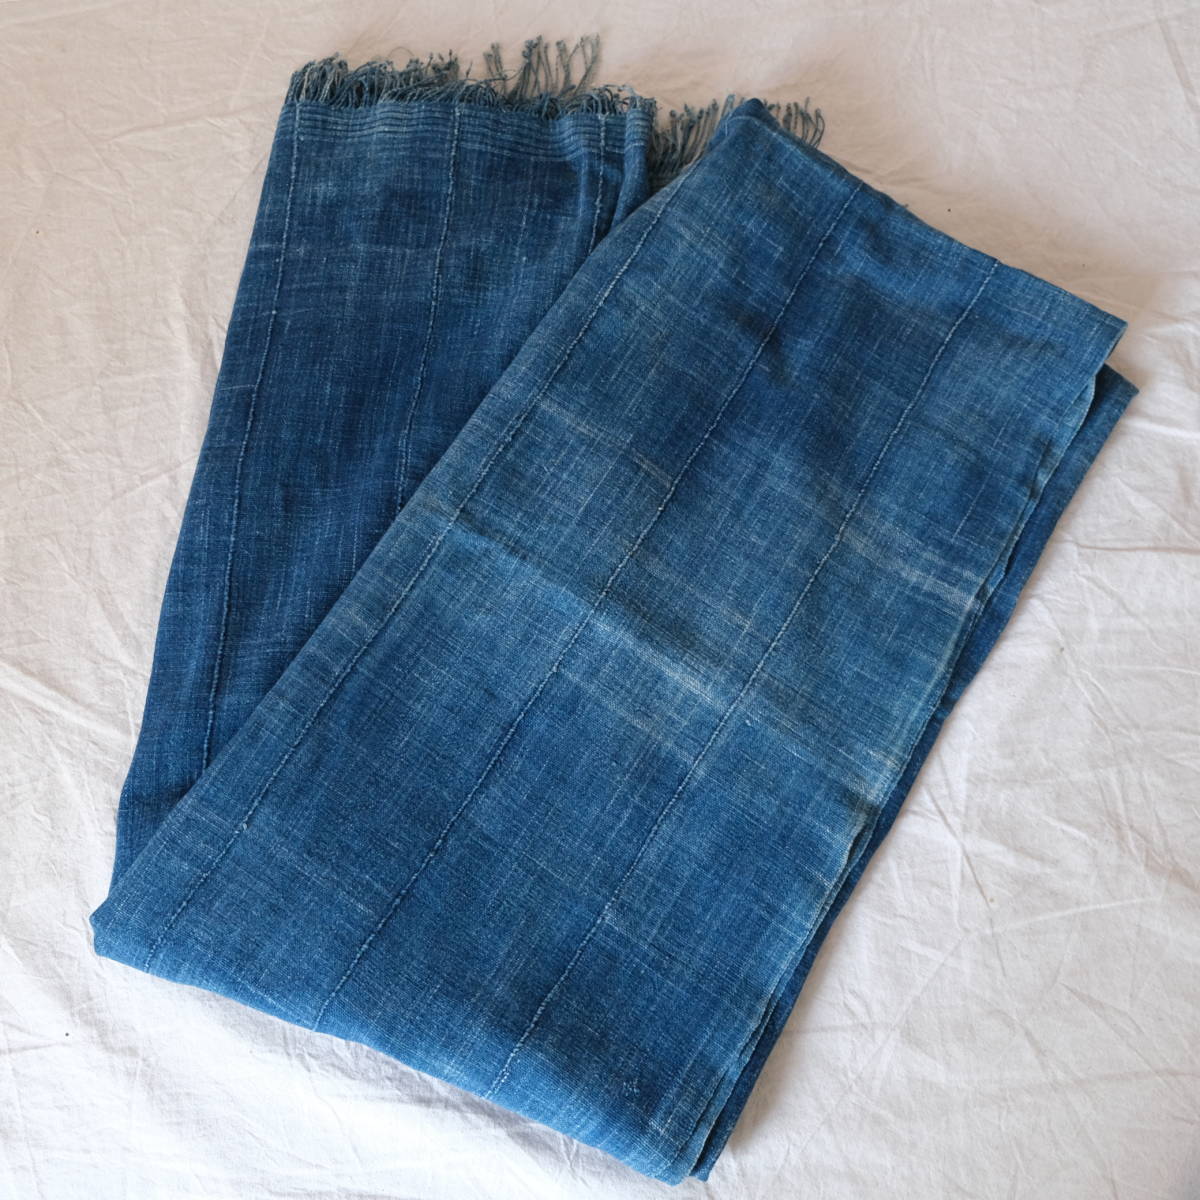  Africa [ indigo fabric ] Indigo dyeing cotton cloth brukinafaso/ indigo stole / old cloth Vintage large size vintage